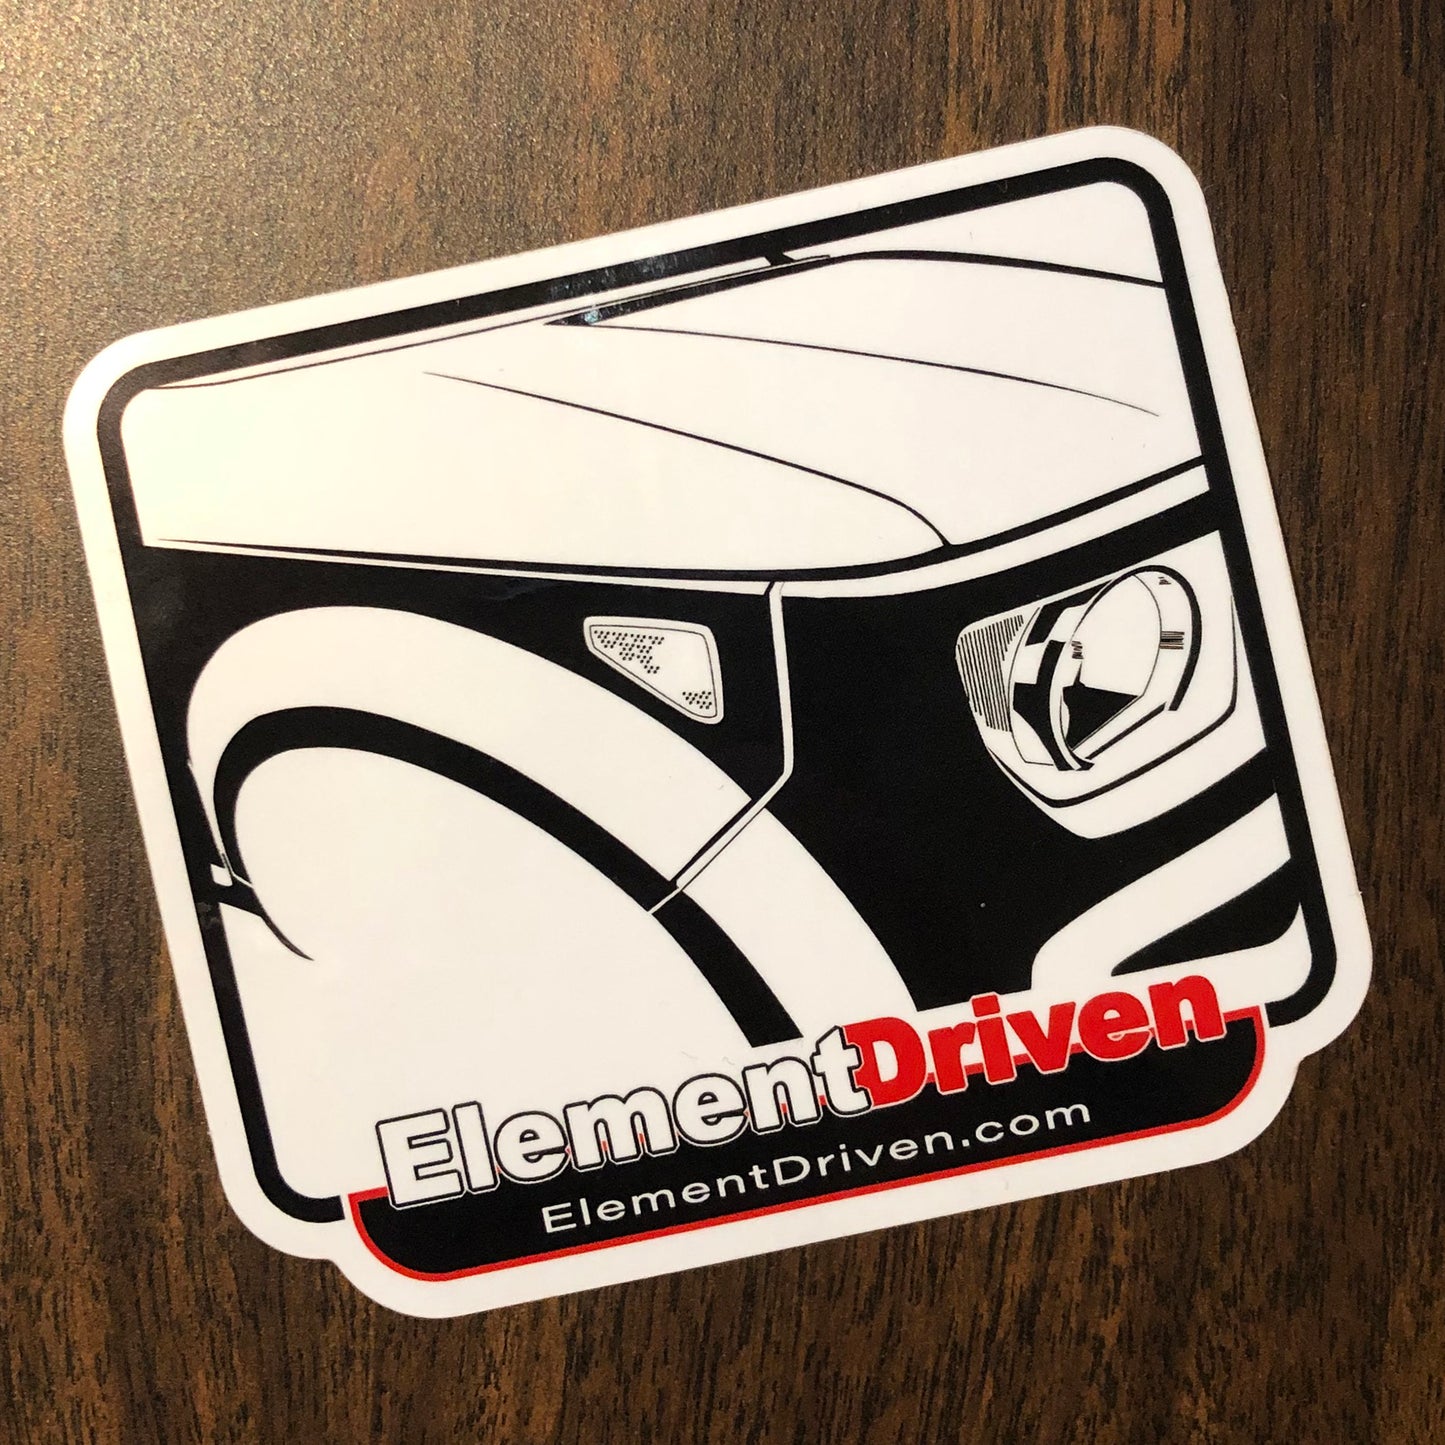 ElementDriven Graphic Logo Window Sticker